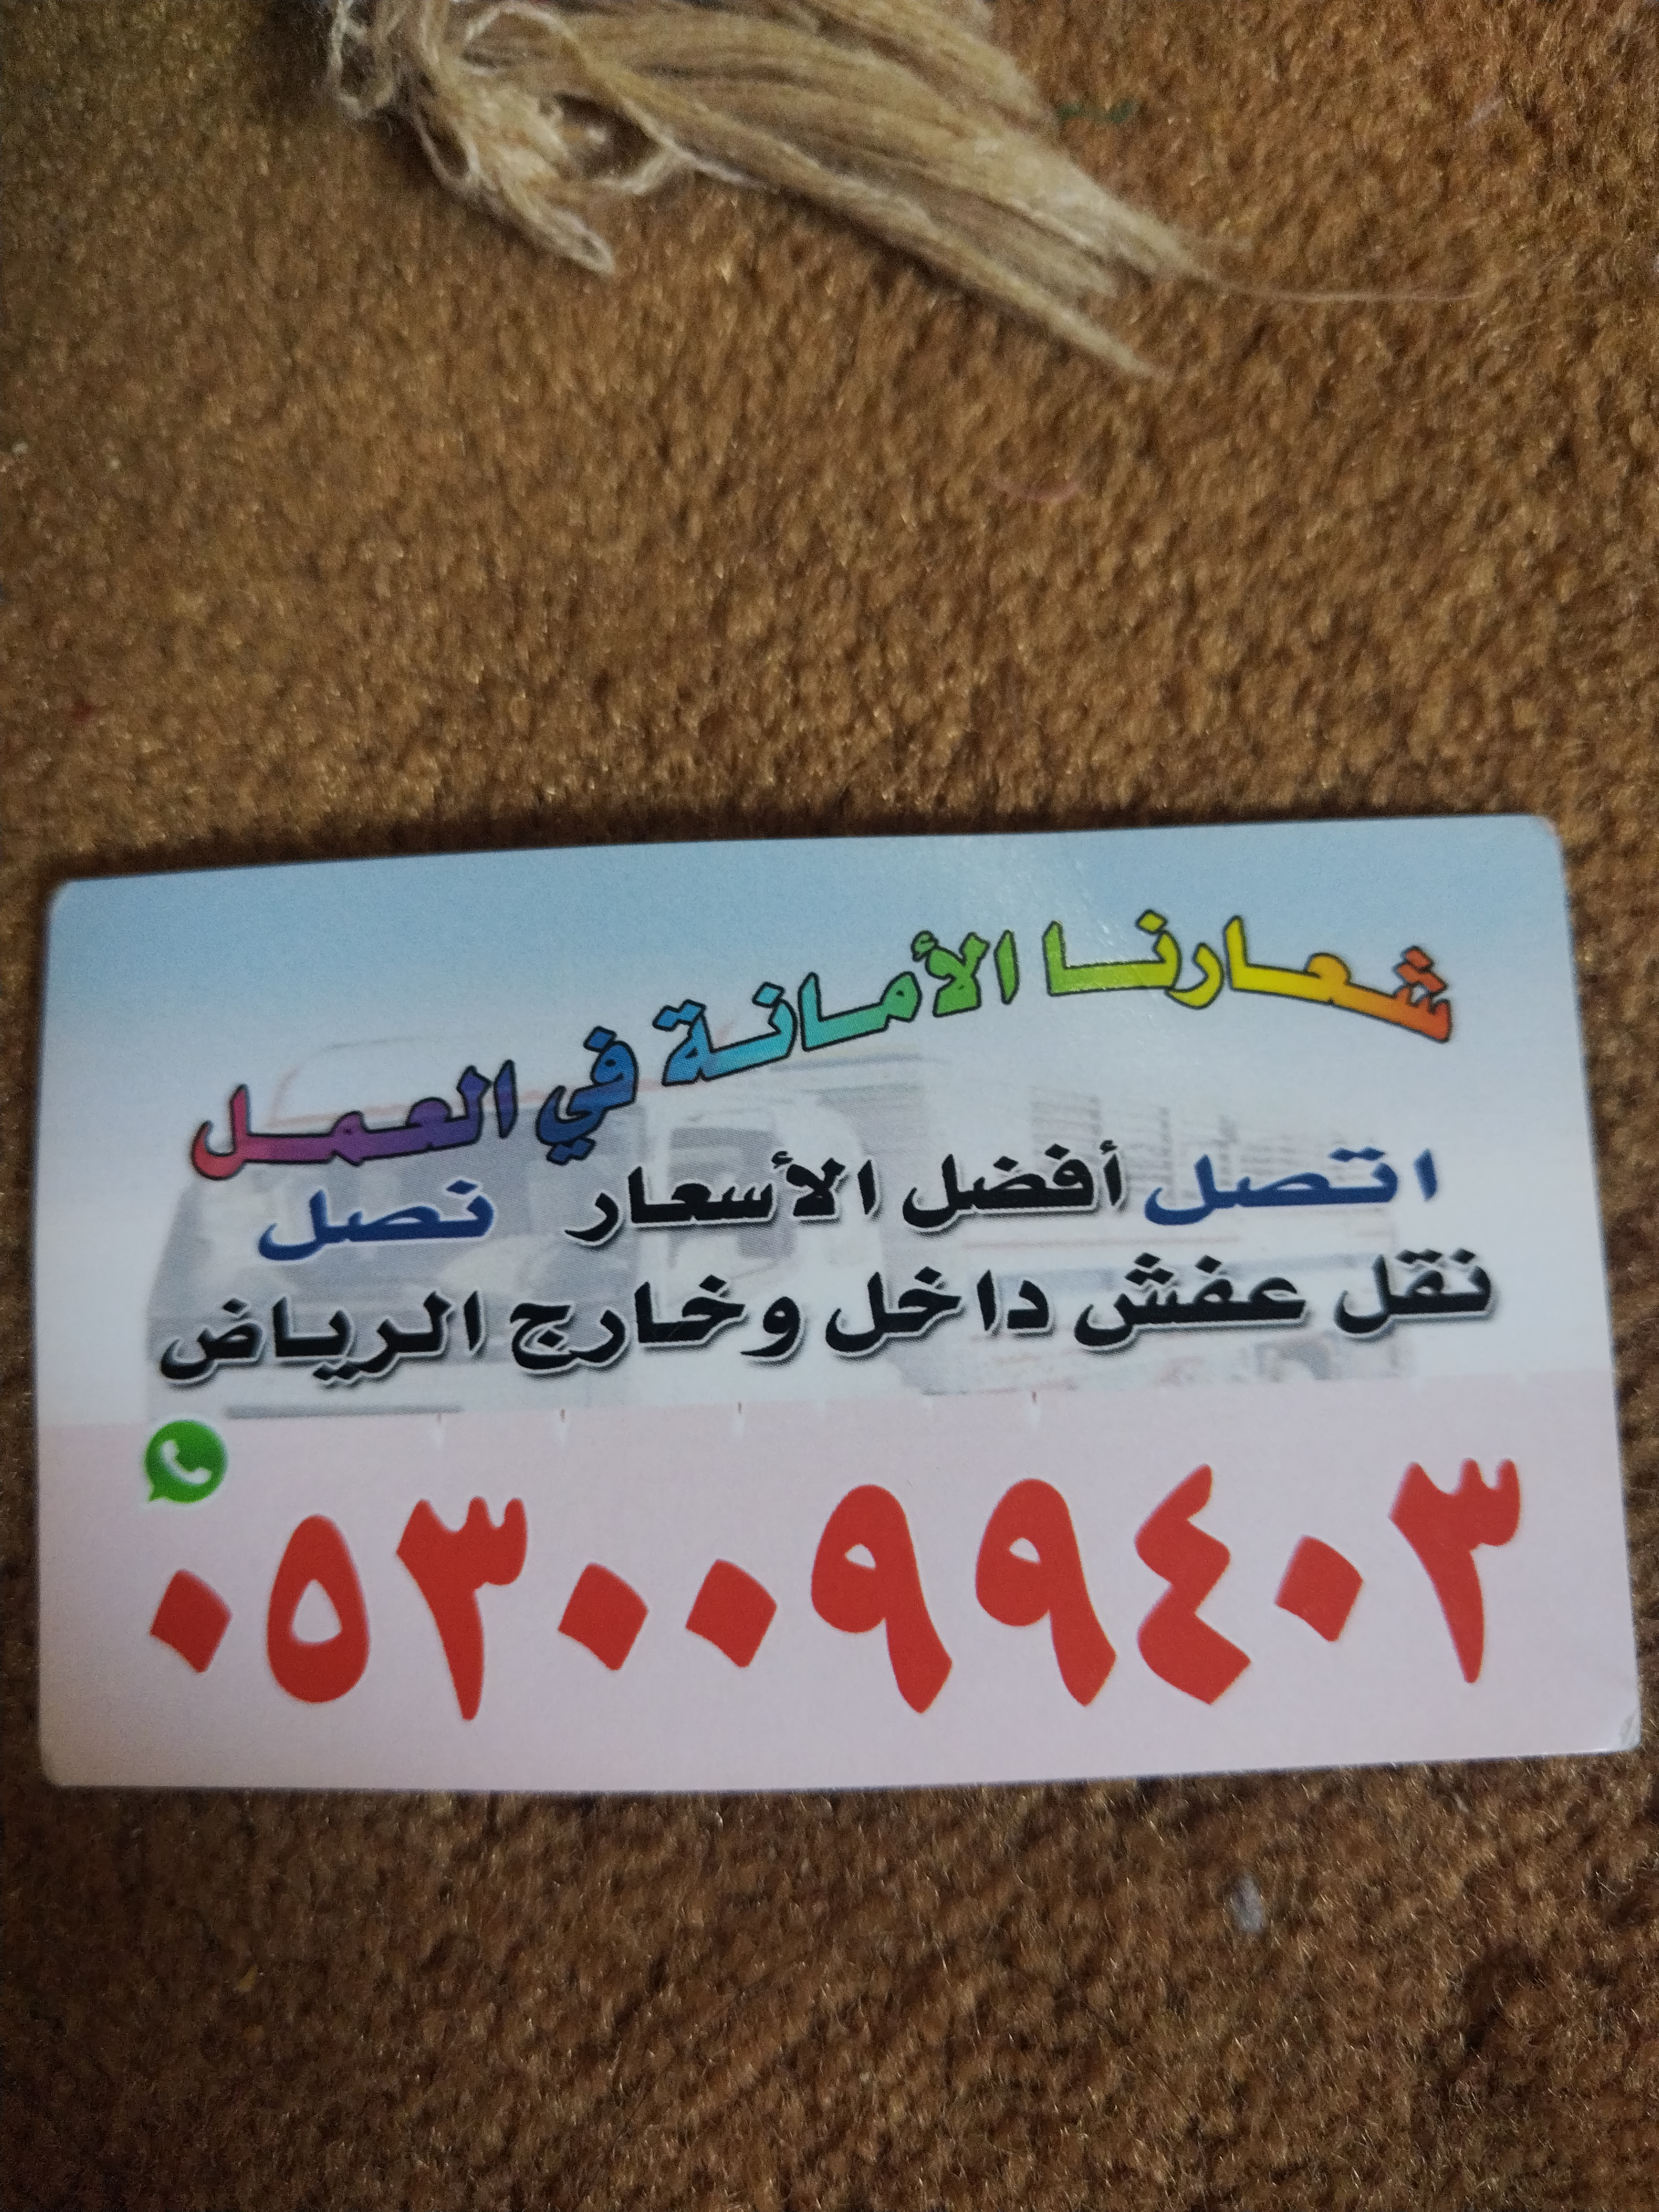 ابو احمد شراء اثاث مستعمل حي الغدير 0530099403